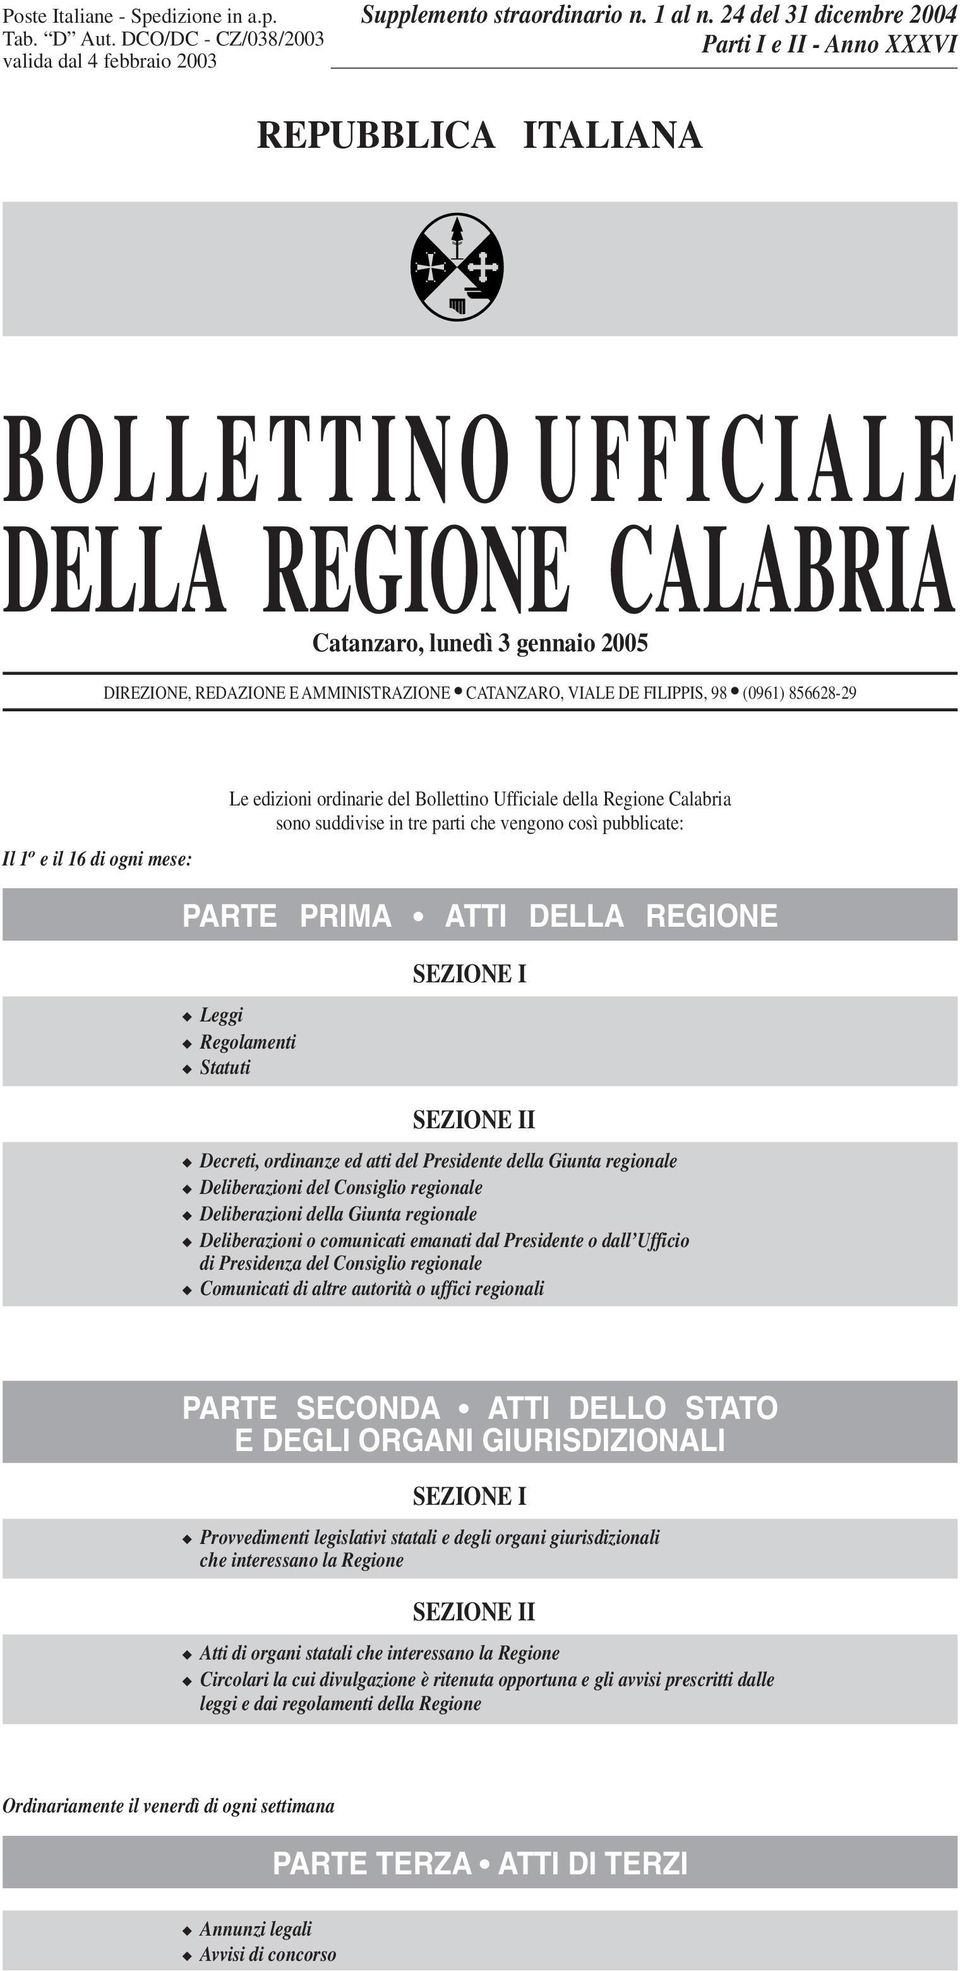 DE FILIPPIS, 98 (0961) 856628-29 Il 1 o e il 16 di ogni mese: Le edizioni ordinarie del Bollettino Ufficiale della Regione Calabria sono suddivise in tre parti che vengono così pubblicate: PARTE